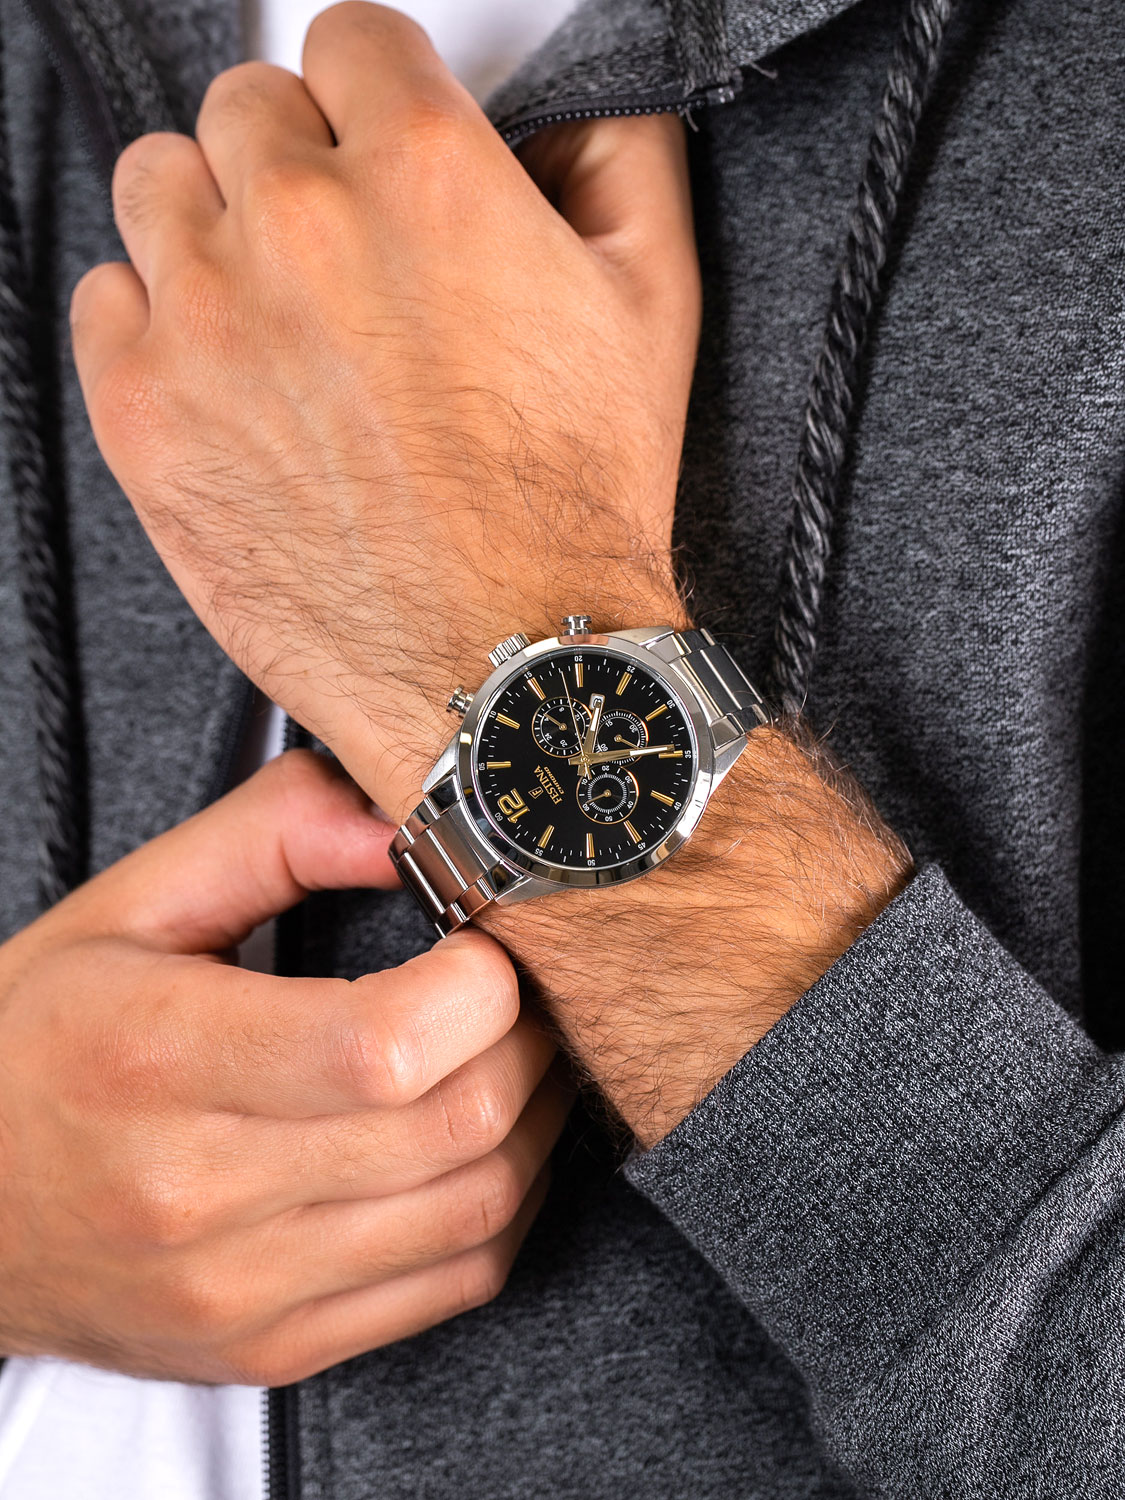 характеристики, фото, AllTime.ru Festina описание Наручные F20343/4 — в интернет-магазине купить цене, часы лучшей по